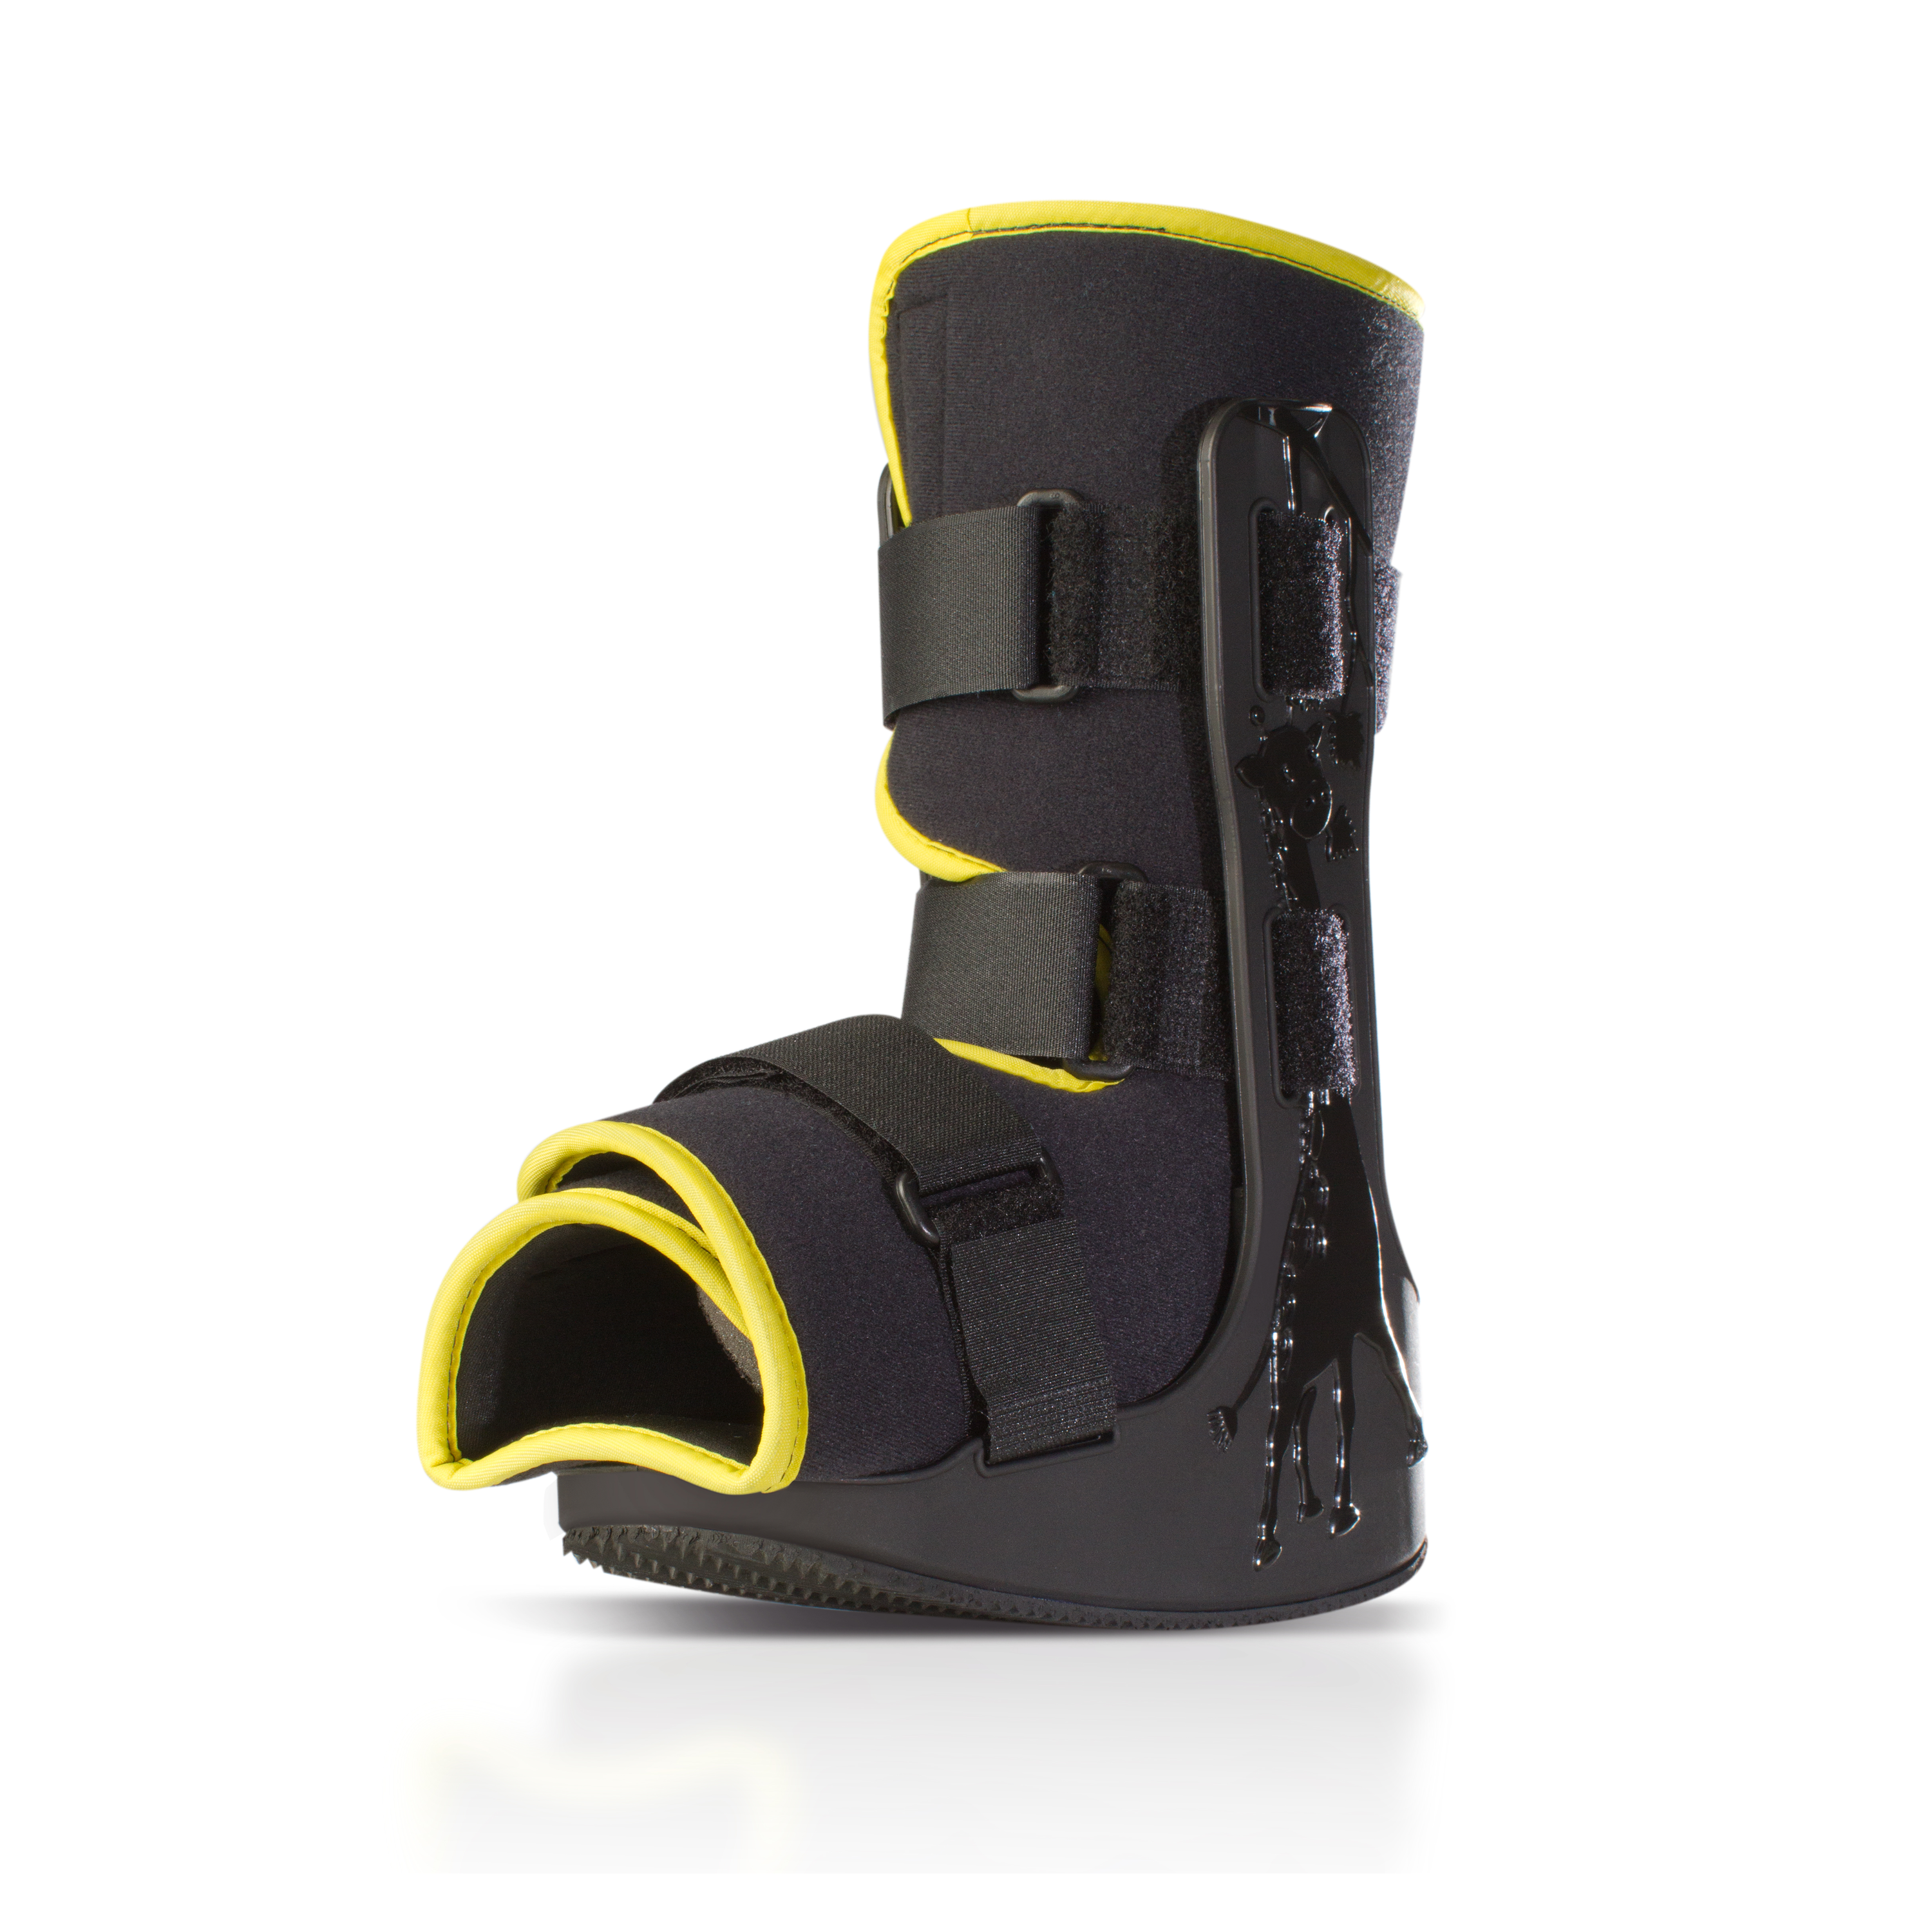 Produktbild PROCARE® MiniTrax™ Walker Large gelb, Unterschenkel-Fuß-Orthese zur Immobilisierung für die Versorgung von Kindern